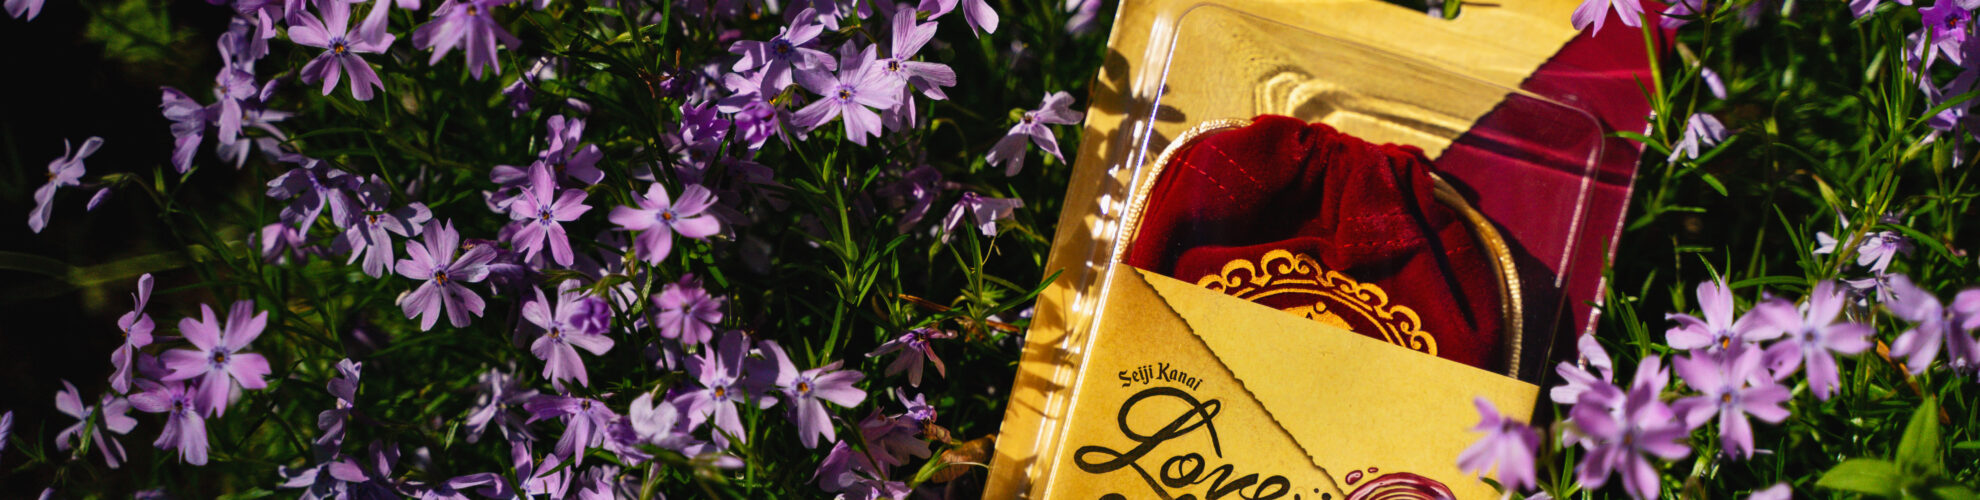 Boîte jeu de société Love Letter posée dans des fleurs